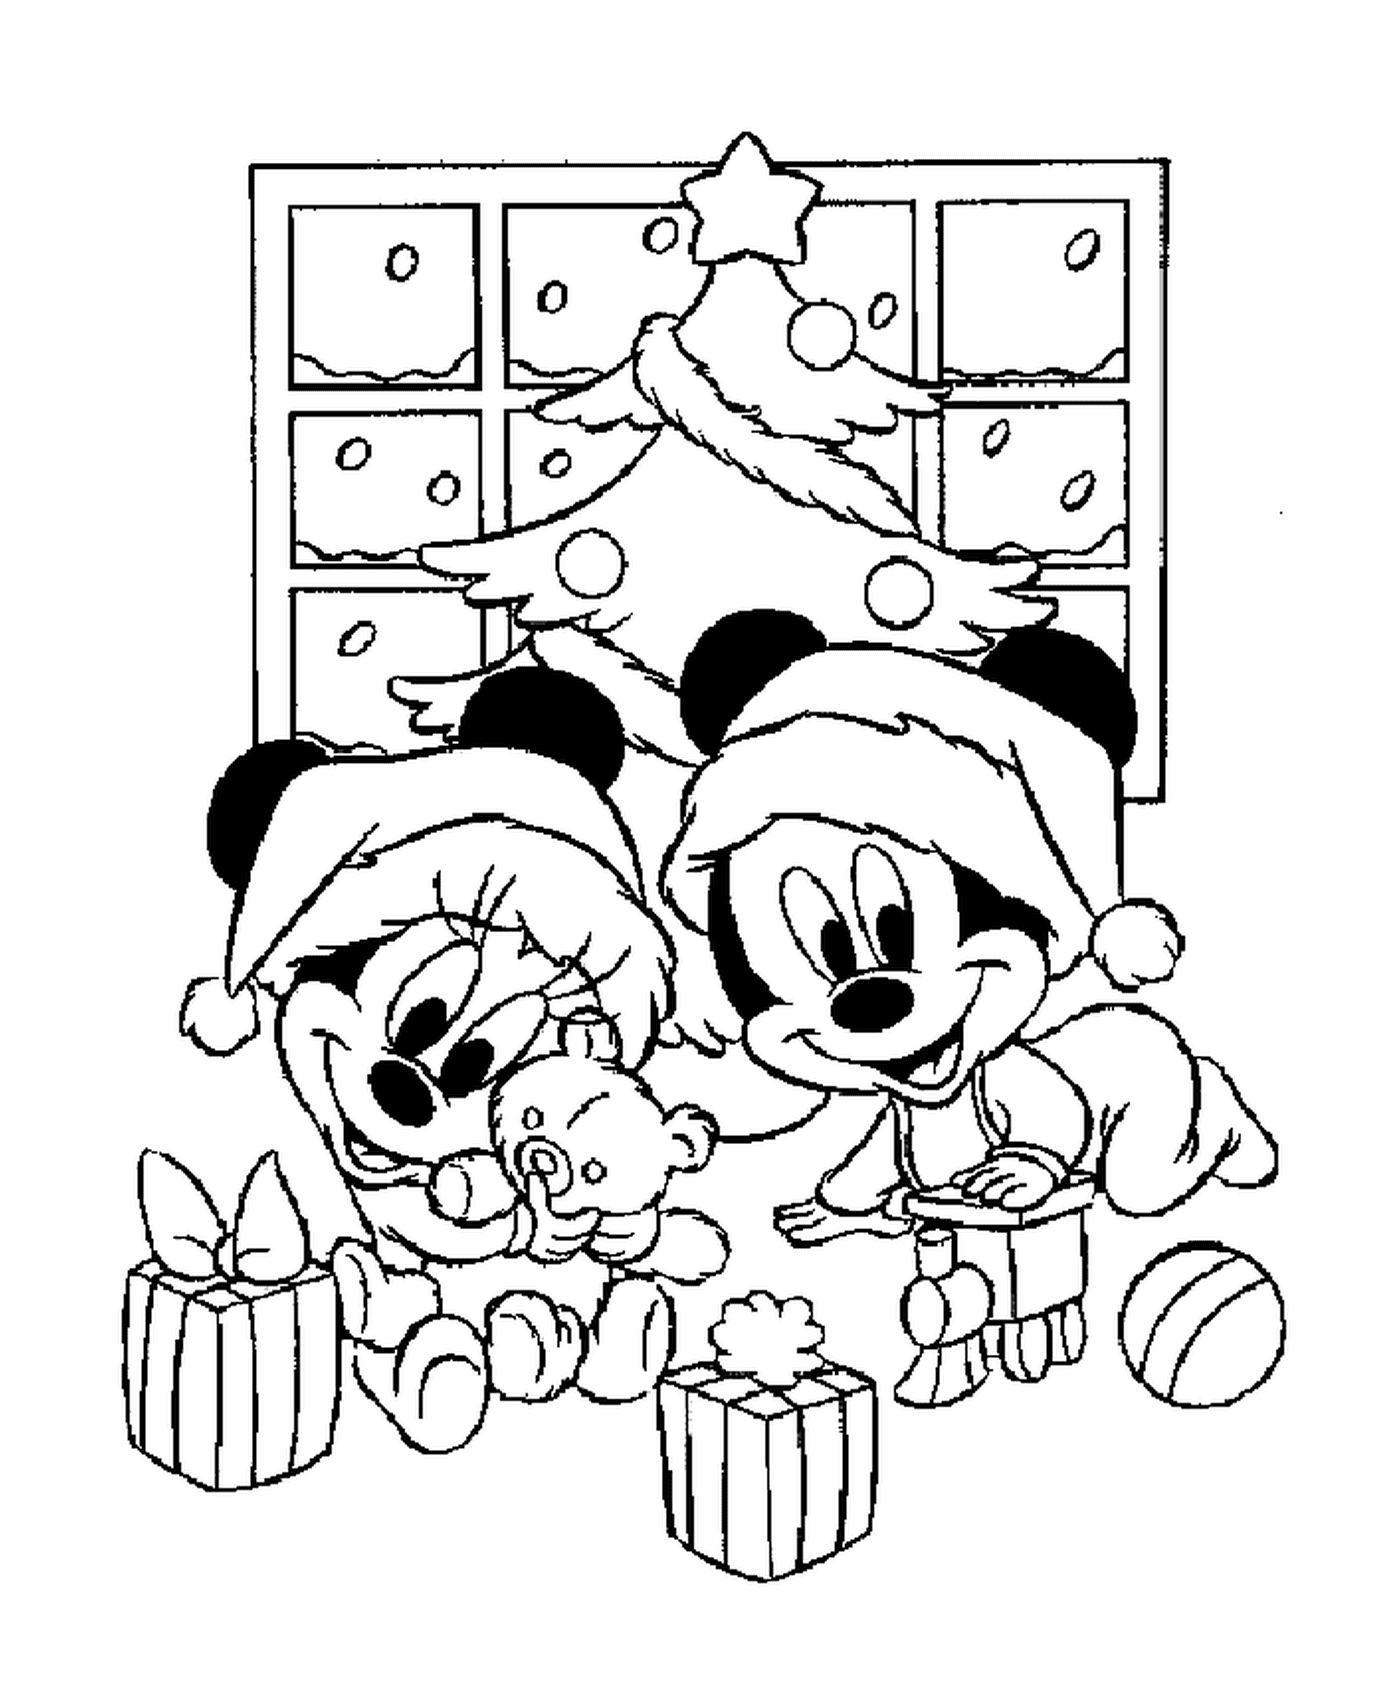  बच्चे मिकी और मिकीनी पेड़ के सामने अपने उपहारों के साथ खेलते हैं 